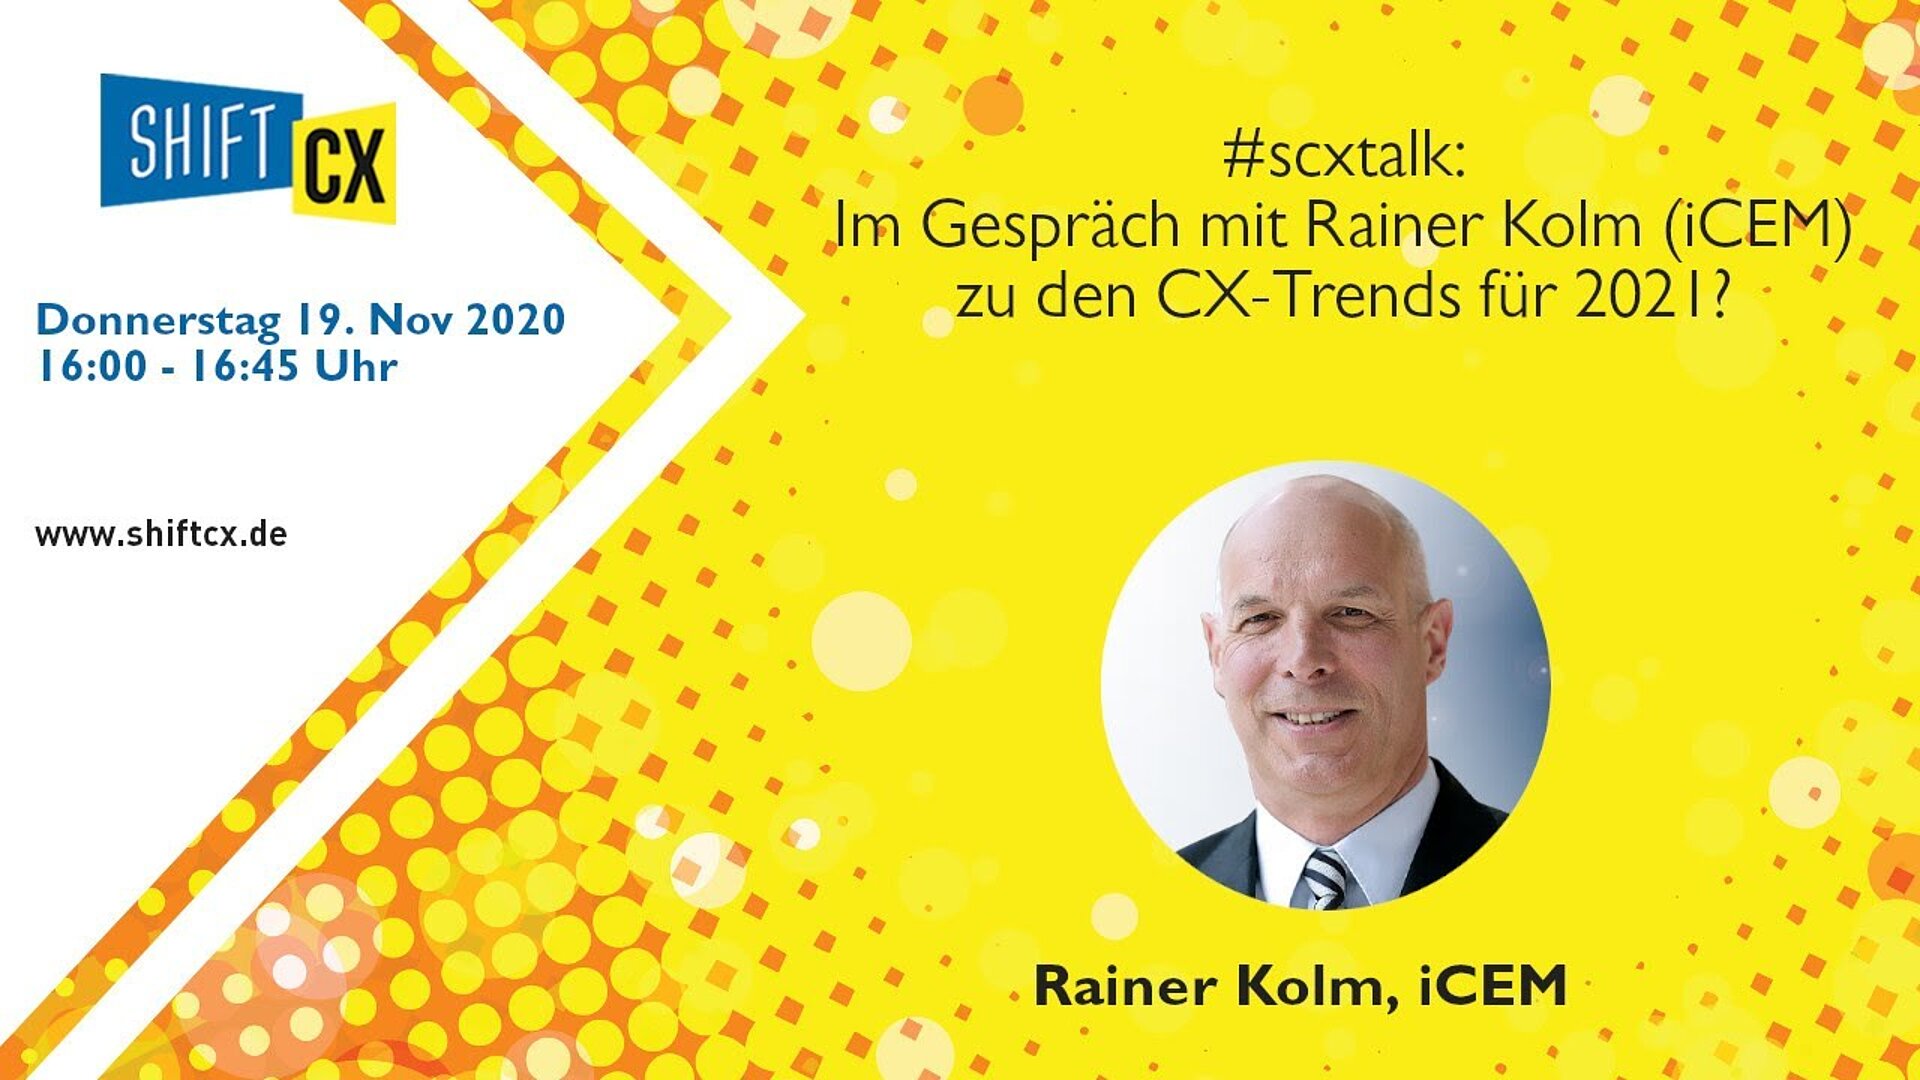 Im Gespräch mit Rainer Kolm (iCEM) zu den CX-Trends für 2021